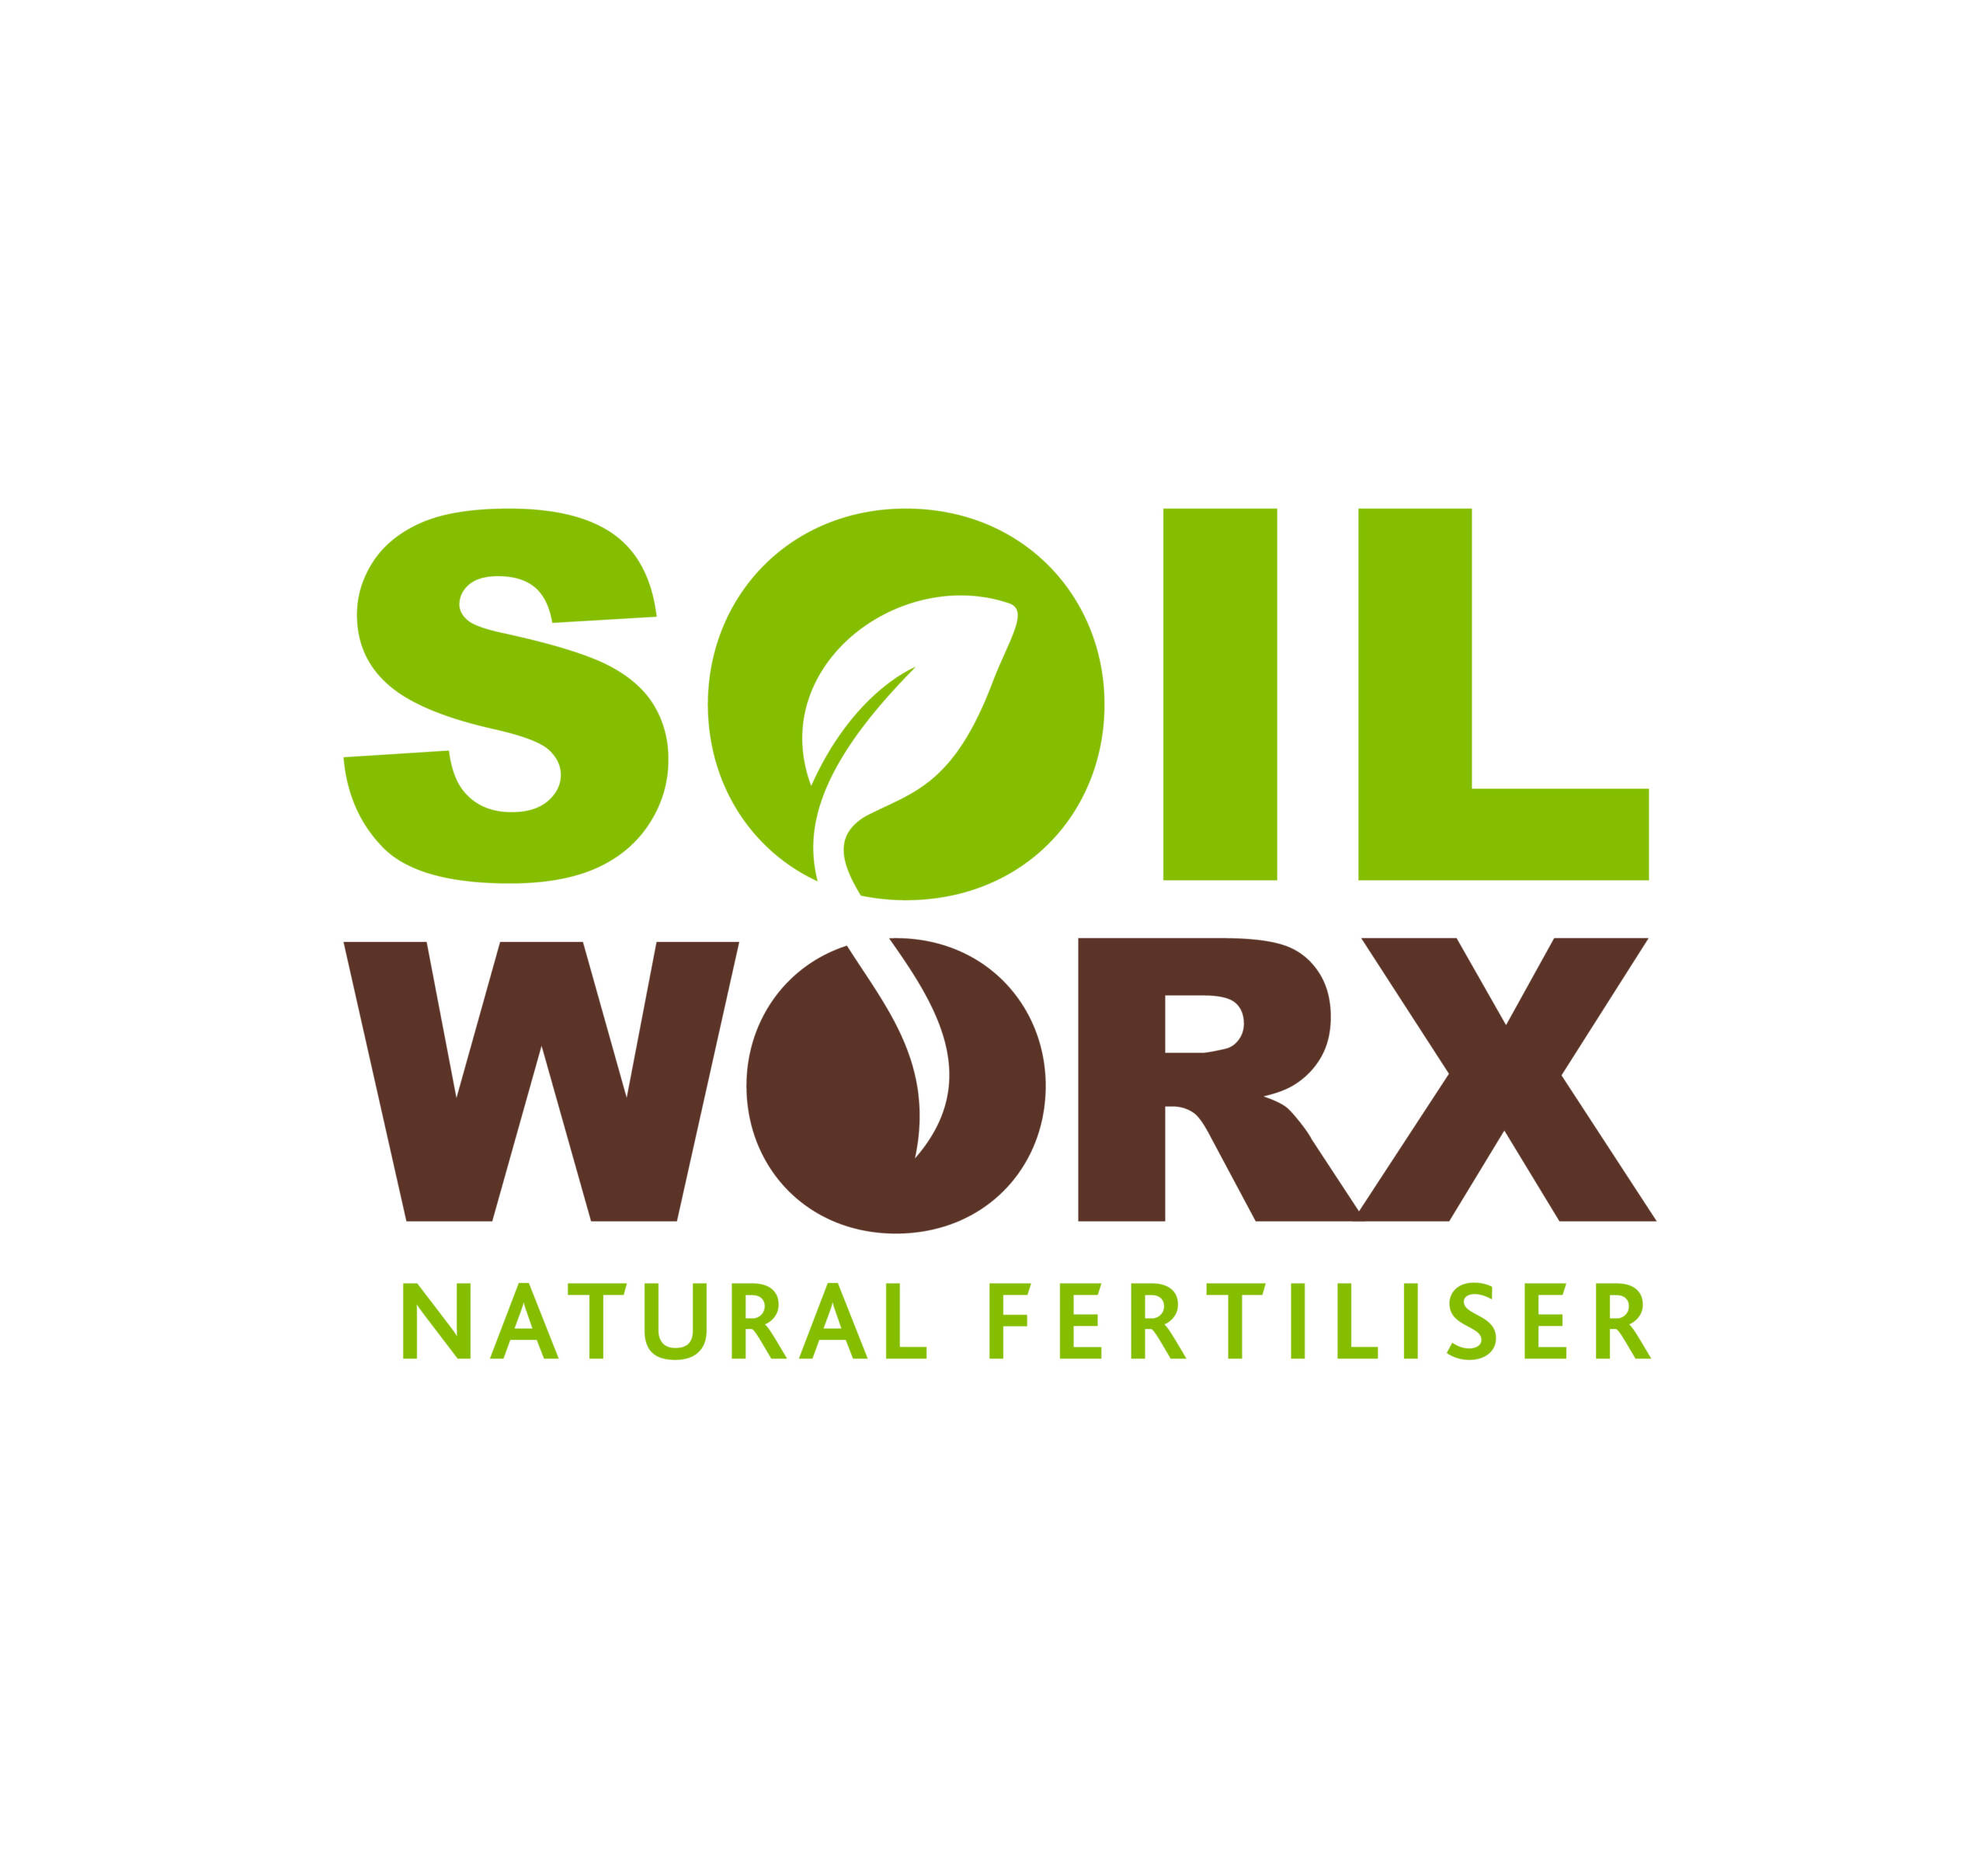 Soil Work Natural Fertiliser